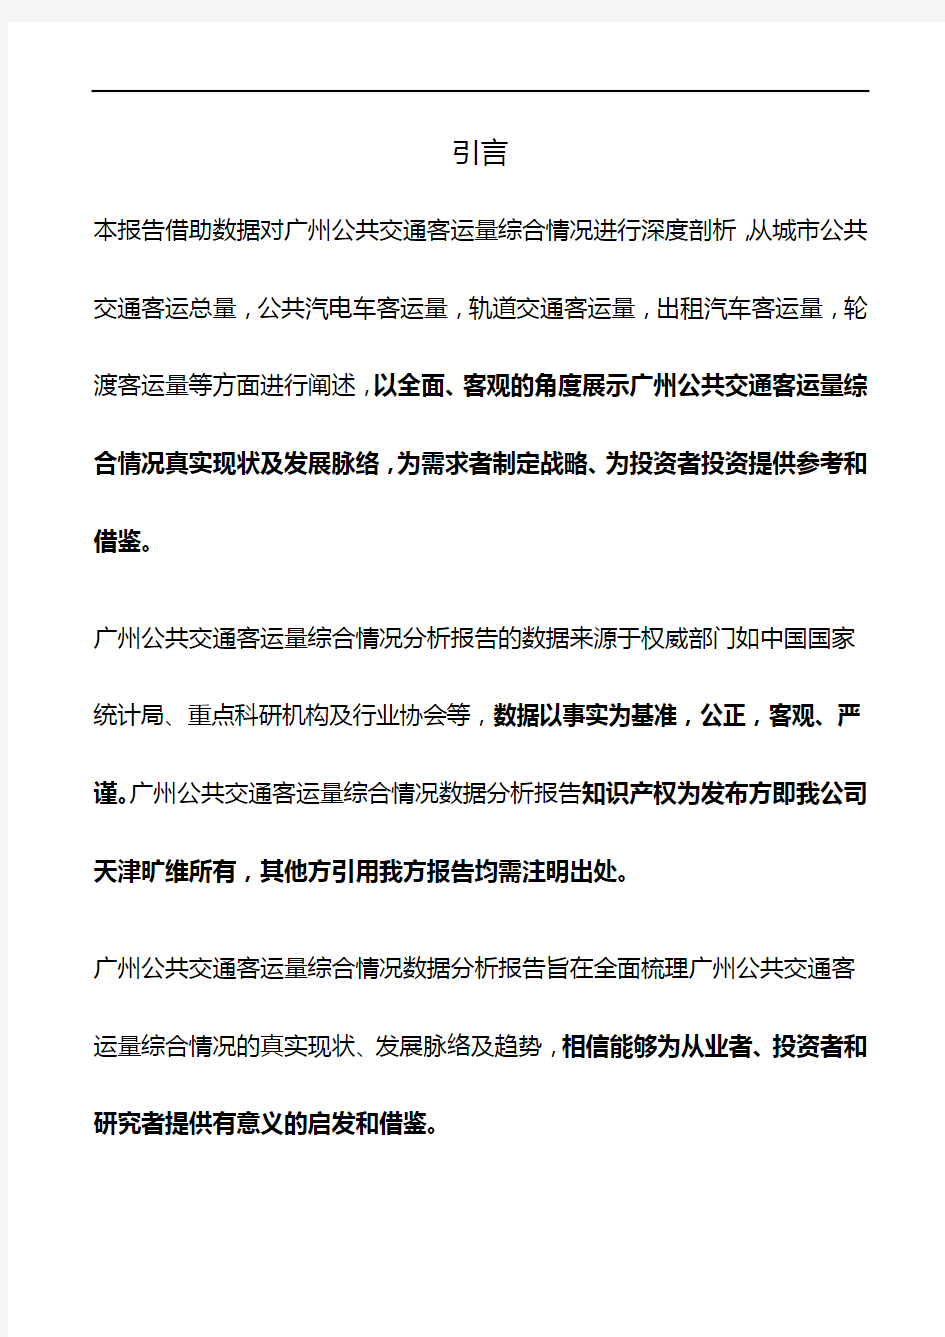 广州公共交通客运量综合情况3年数据分析报告2019版